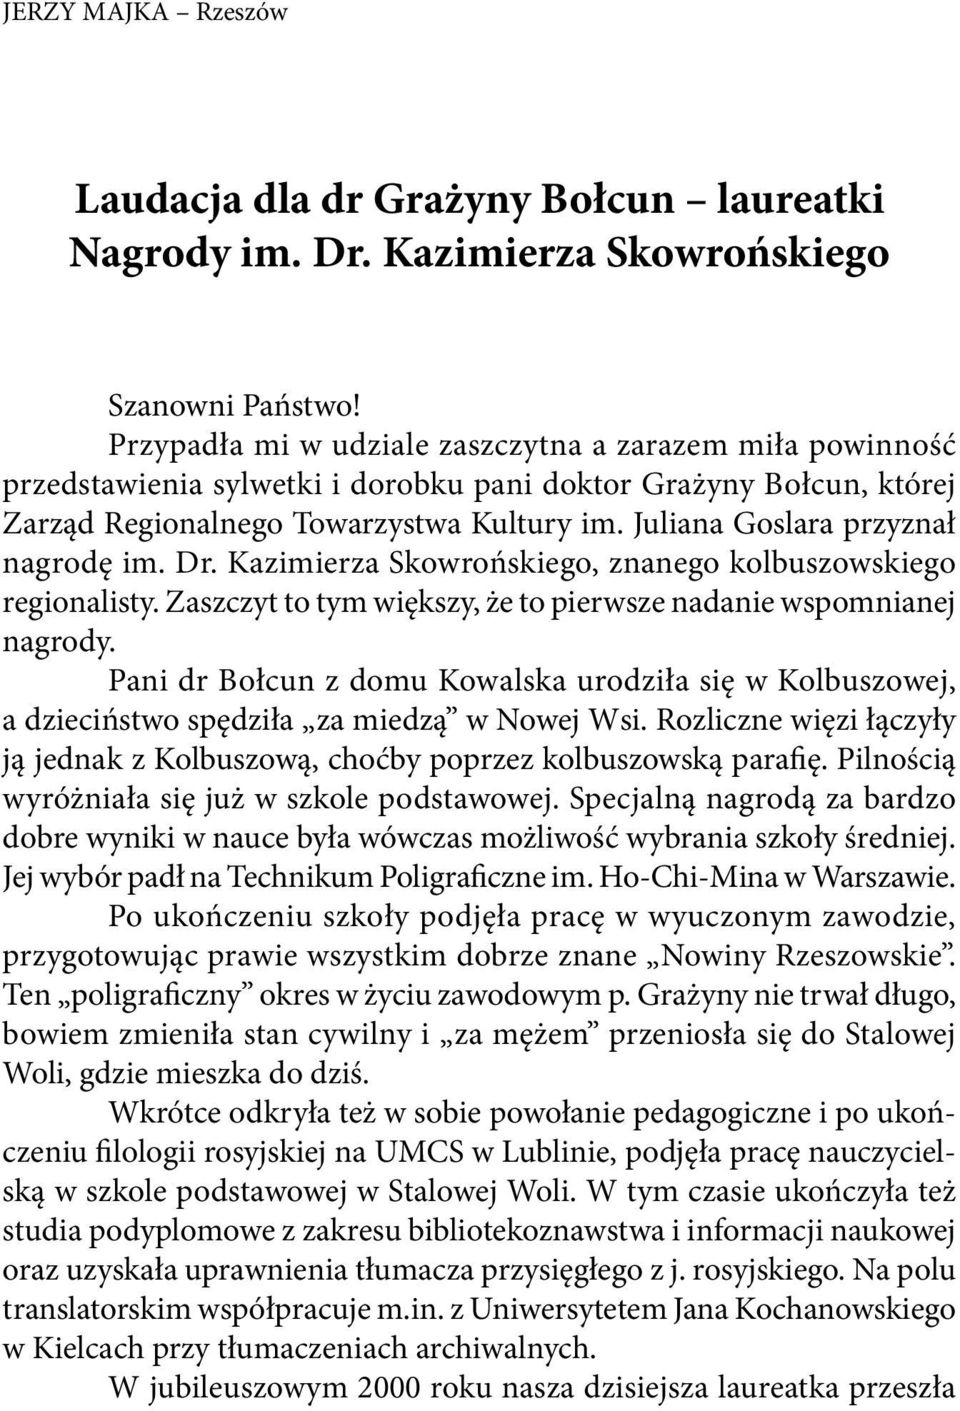 Juliana Goslara przyznał nagrodę im. Dr. Kazimierza Skowrońskiego, znanego kolbuszowskiego regionalisty. Zaszczyt to tym większy, że to pierwsze nadanie wspomnianej nagrody.